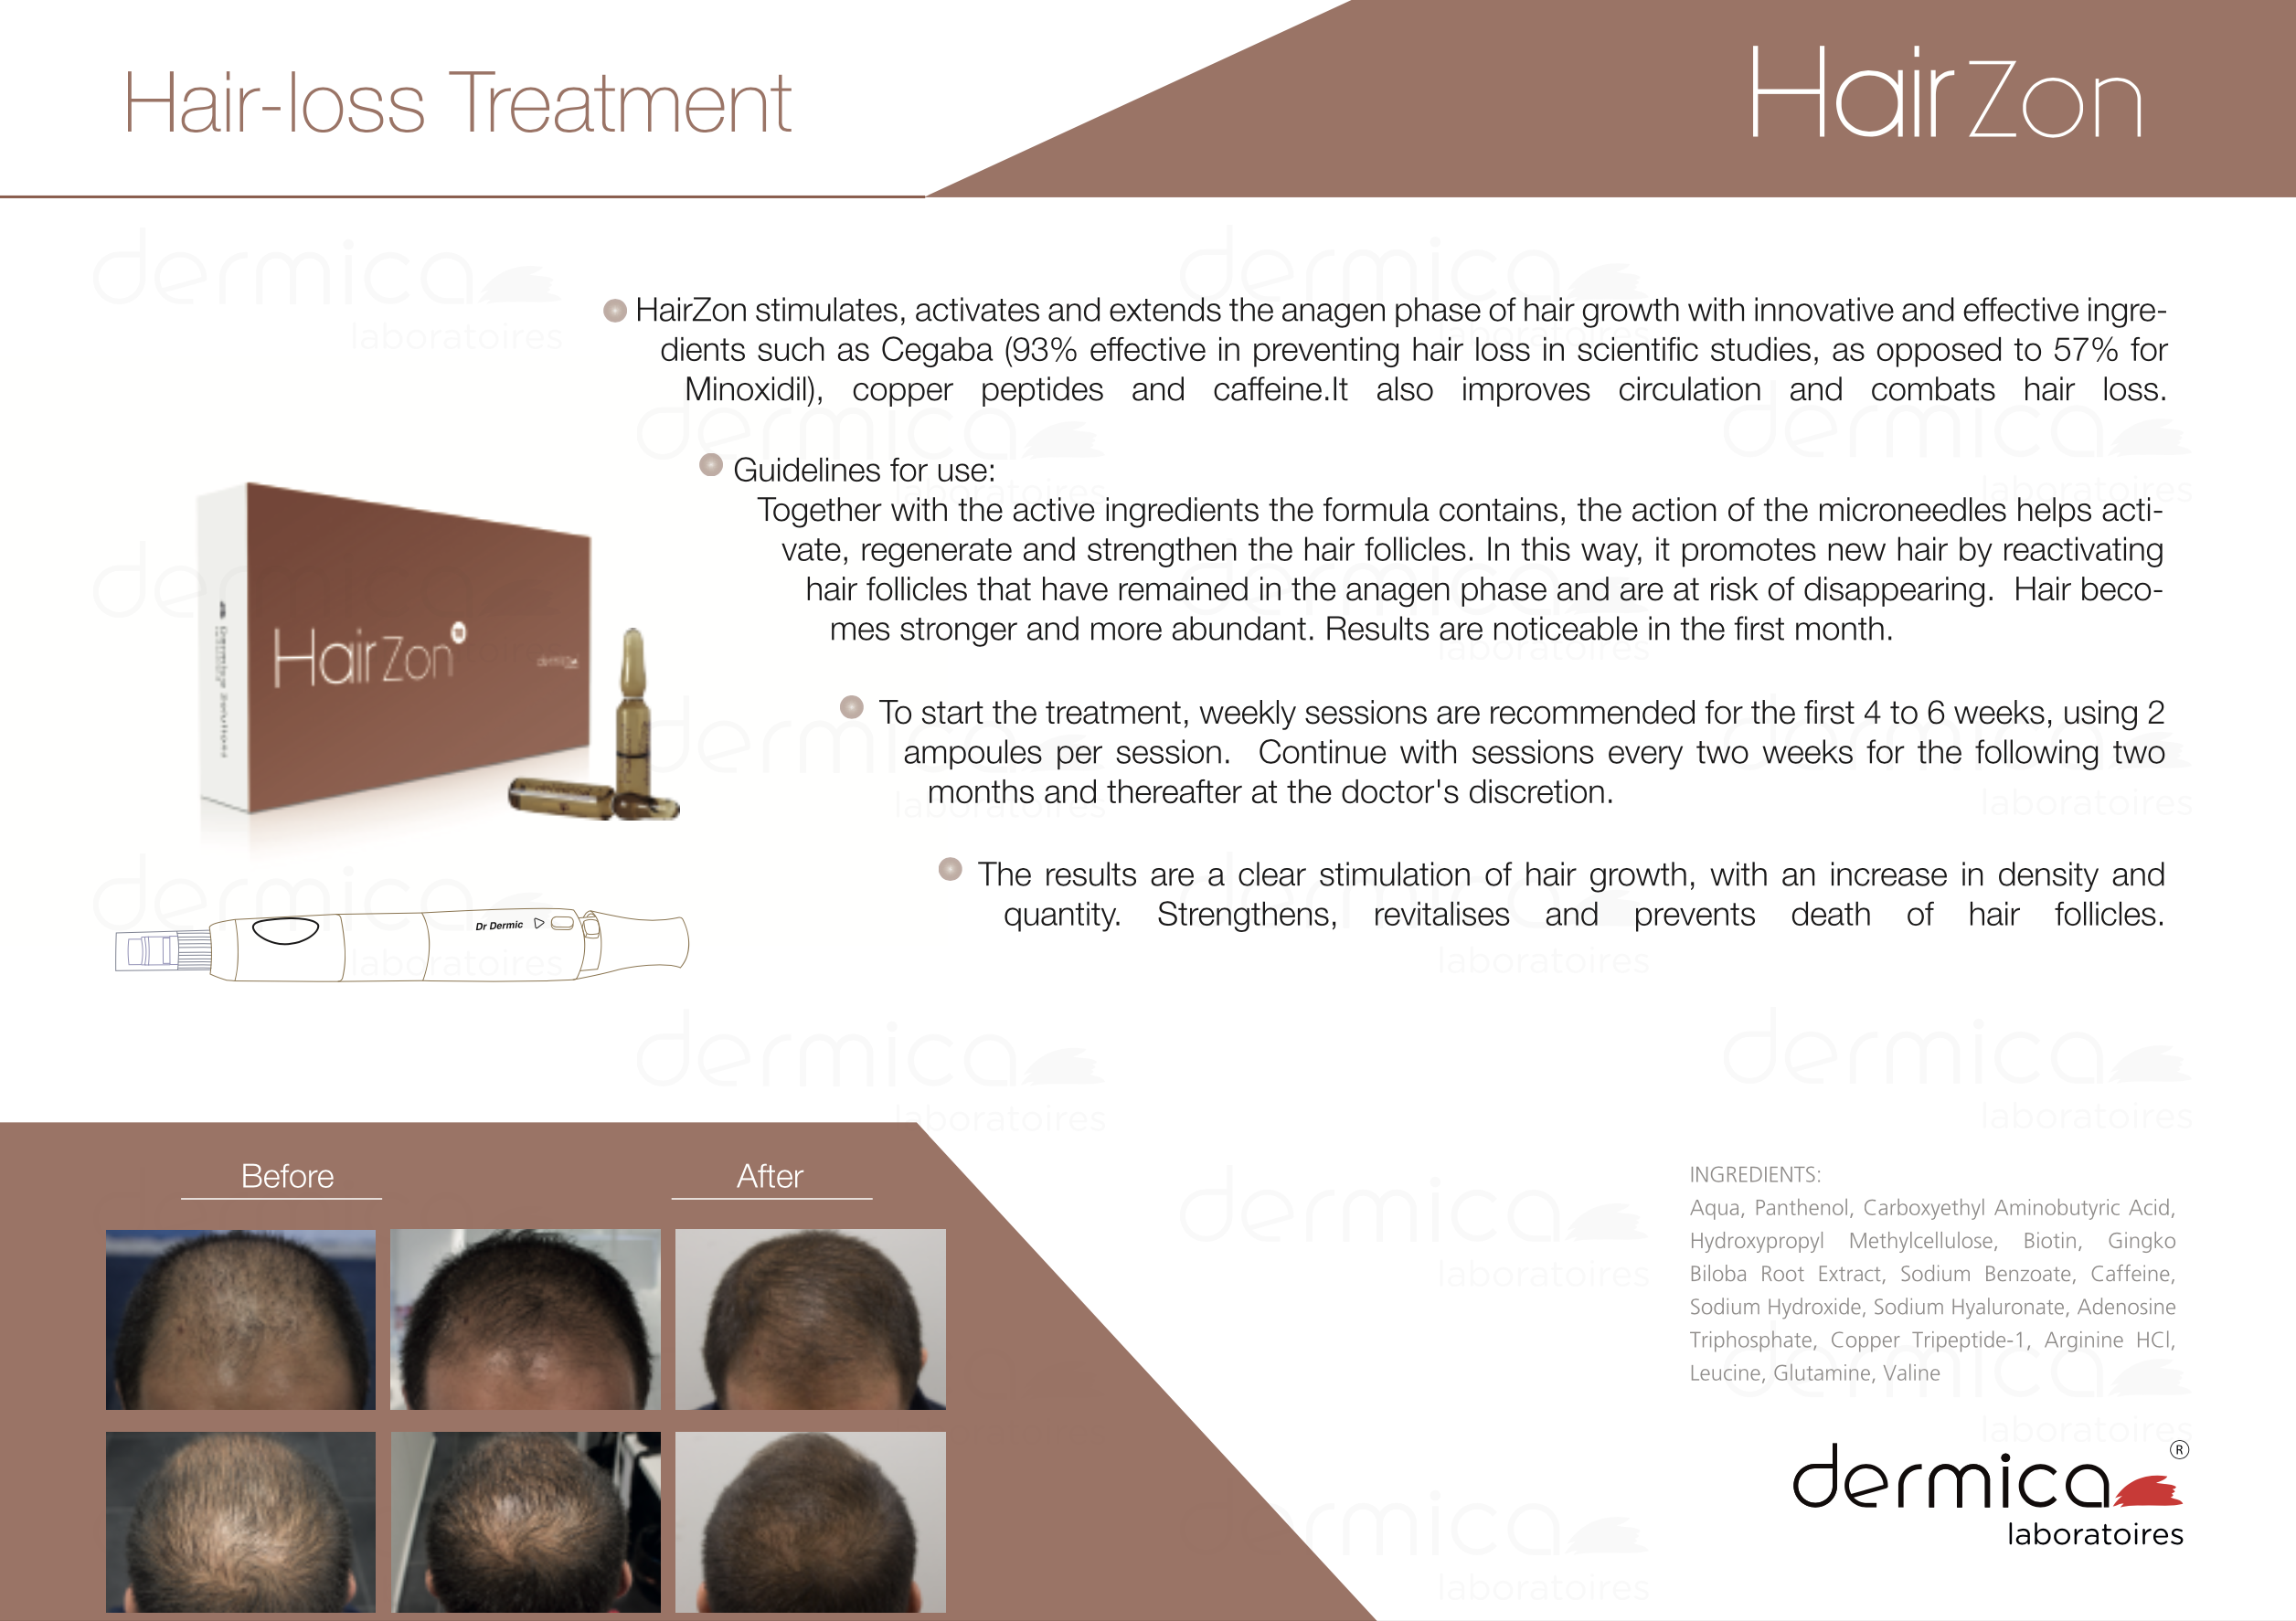 dermica hairzon protocole